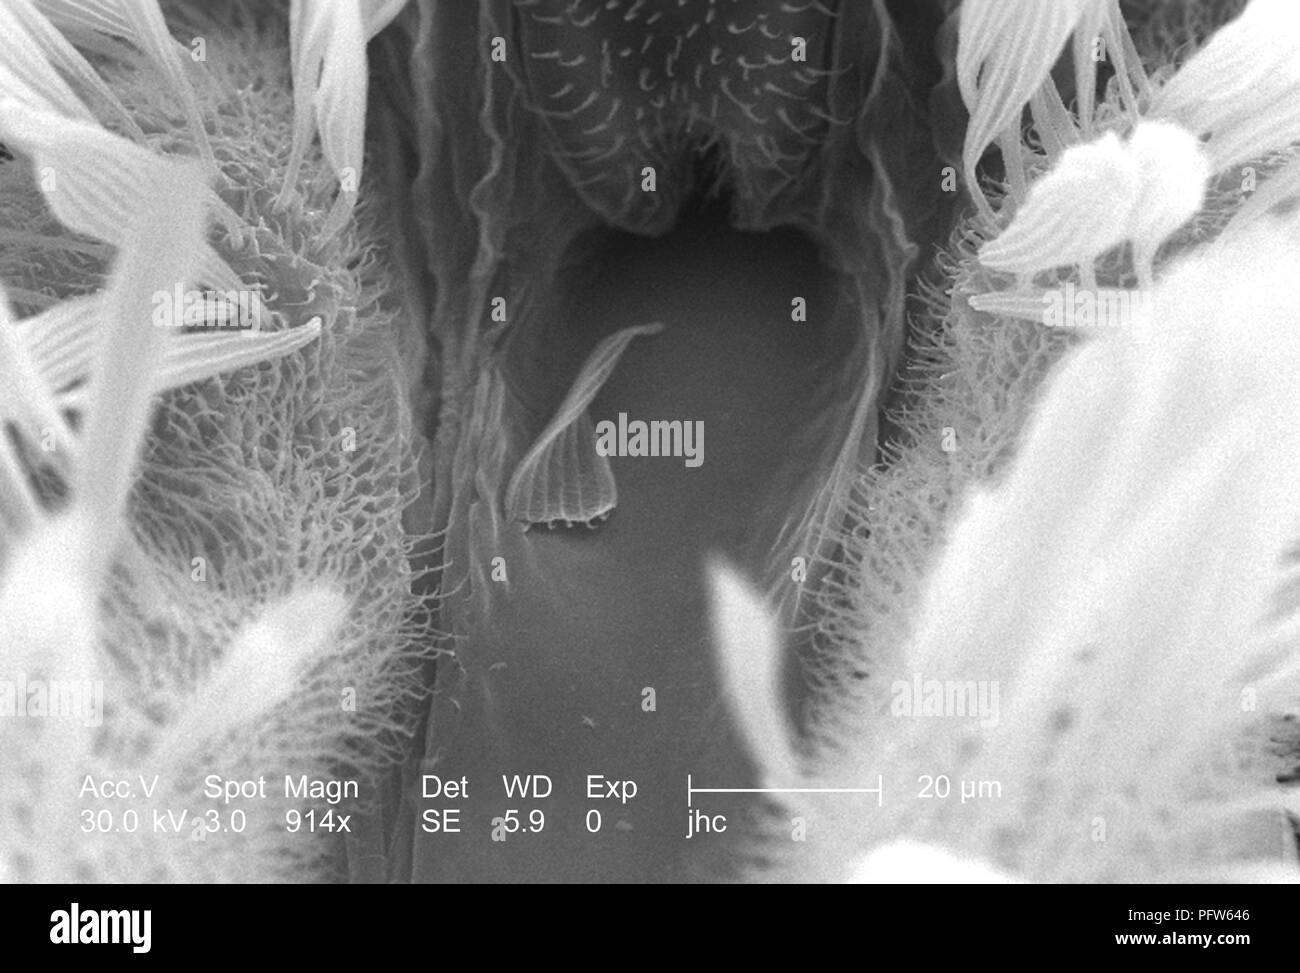 Caratteristiche morfologiche sulla superficie exoskeletal di Anopheles gambiae zanzare proboscide e due palpi mascellari, rivelata in 914x di scansione ingrandita al microscopio elettronico (SEM) immagine, 2006. Immagine cortesia di centri per il controllo delle malattie (CDC) / Paolo Howell. () Foto Stock